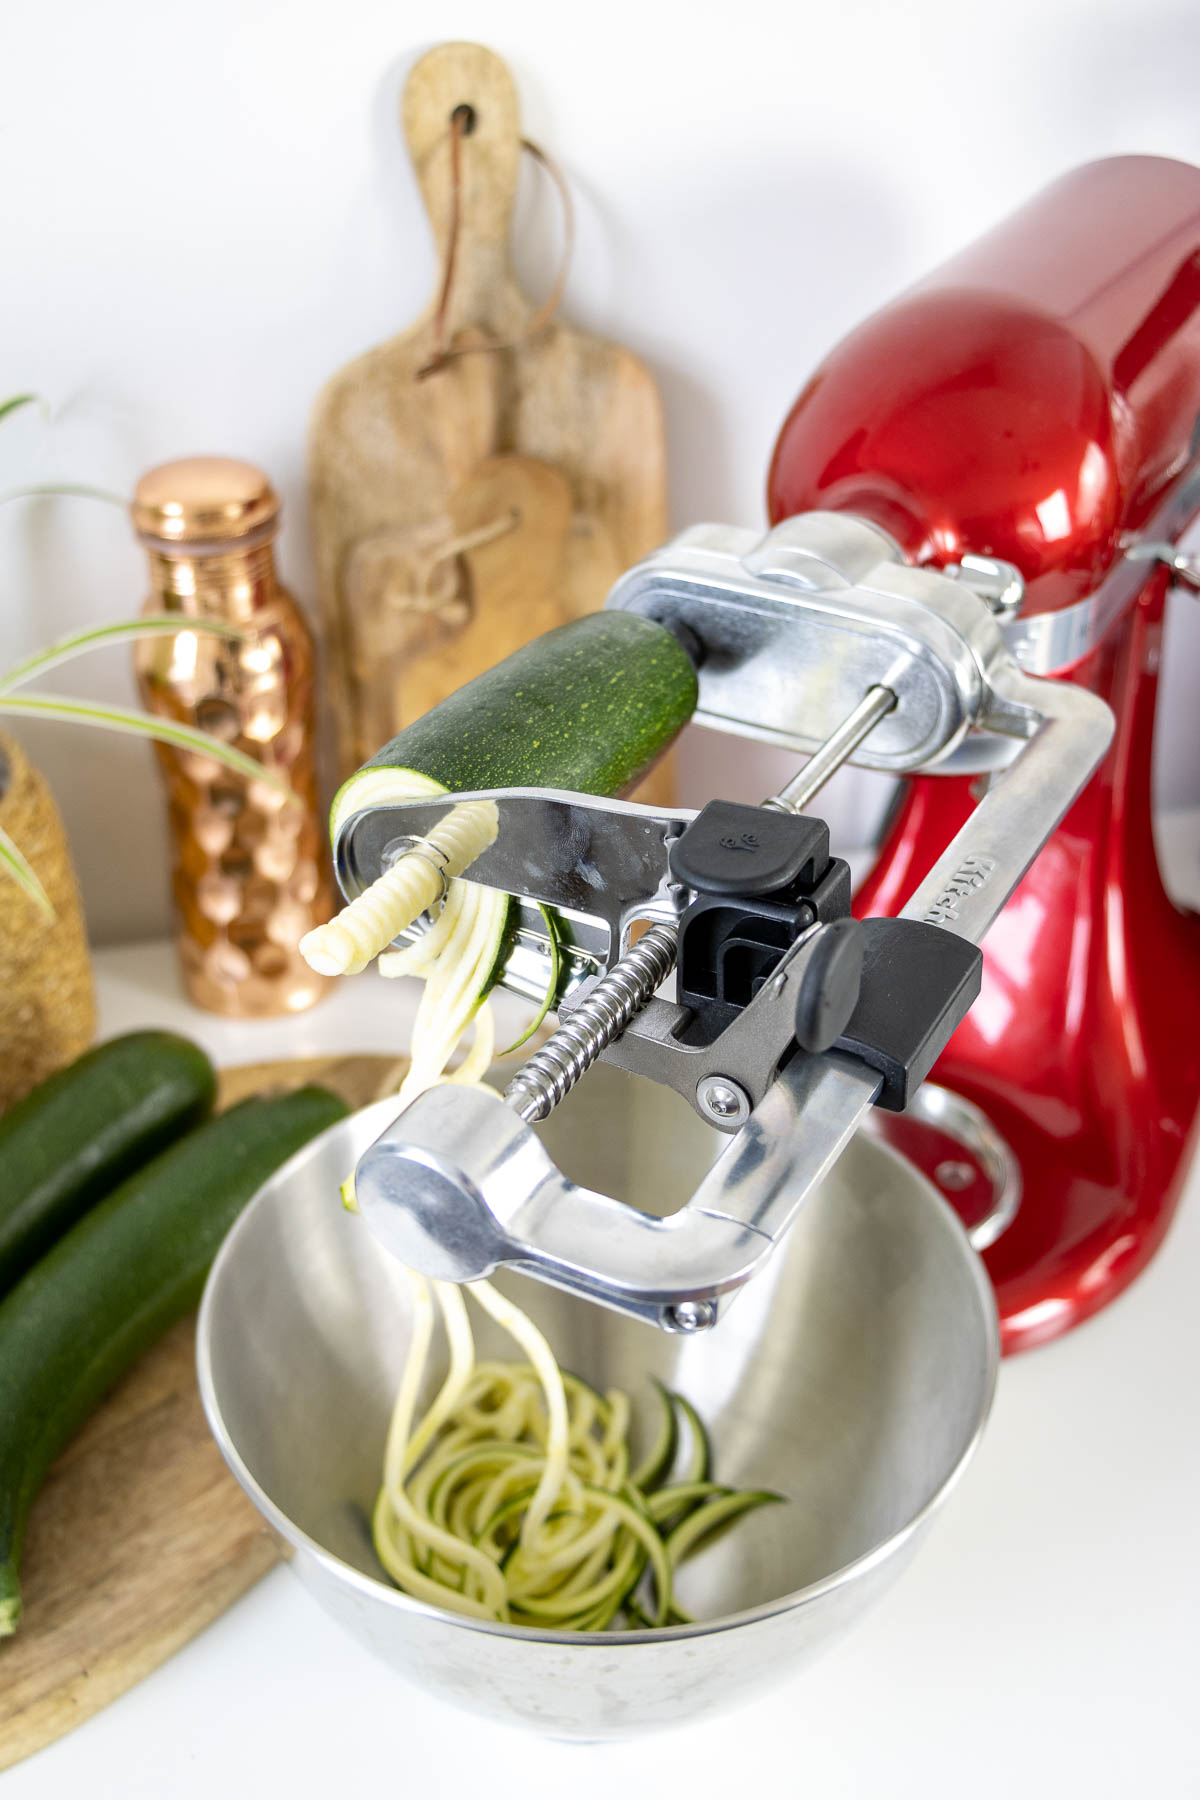 Kitchenaid mit Spiralizer für Zutaten und Spiralizer für Zutaten für Vegane Ramen-Suppe mit Zoodles Rezept